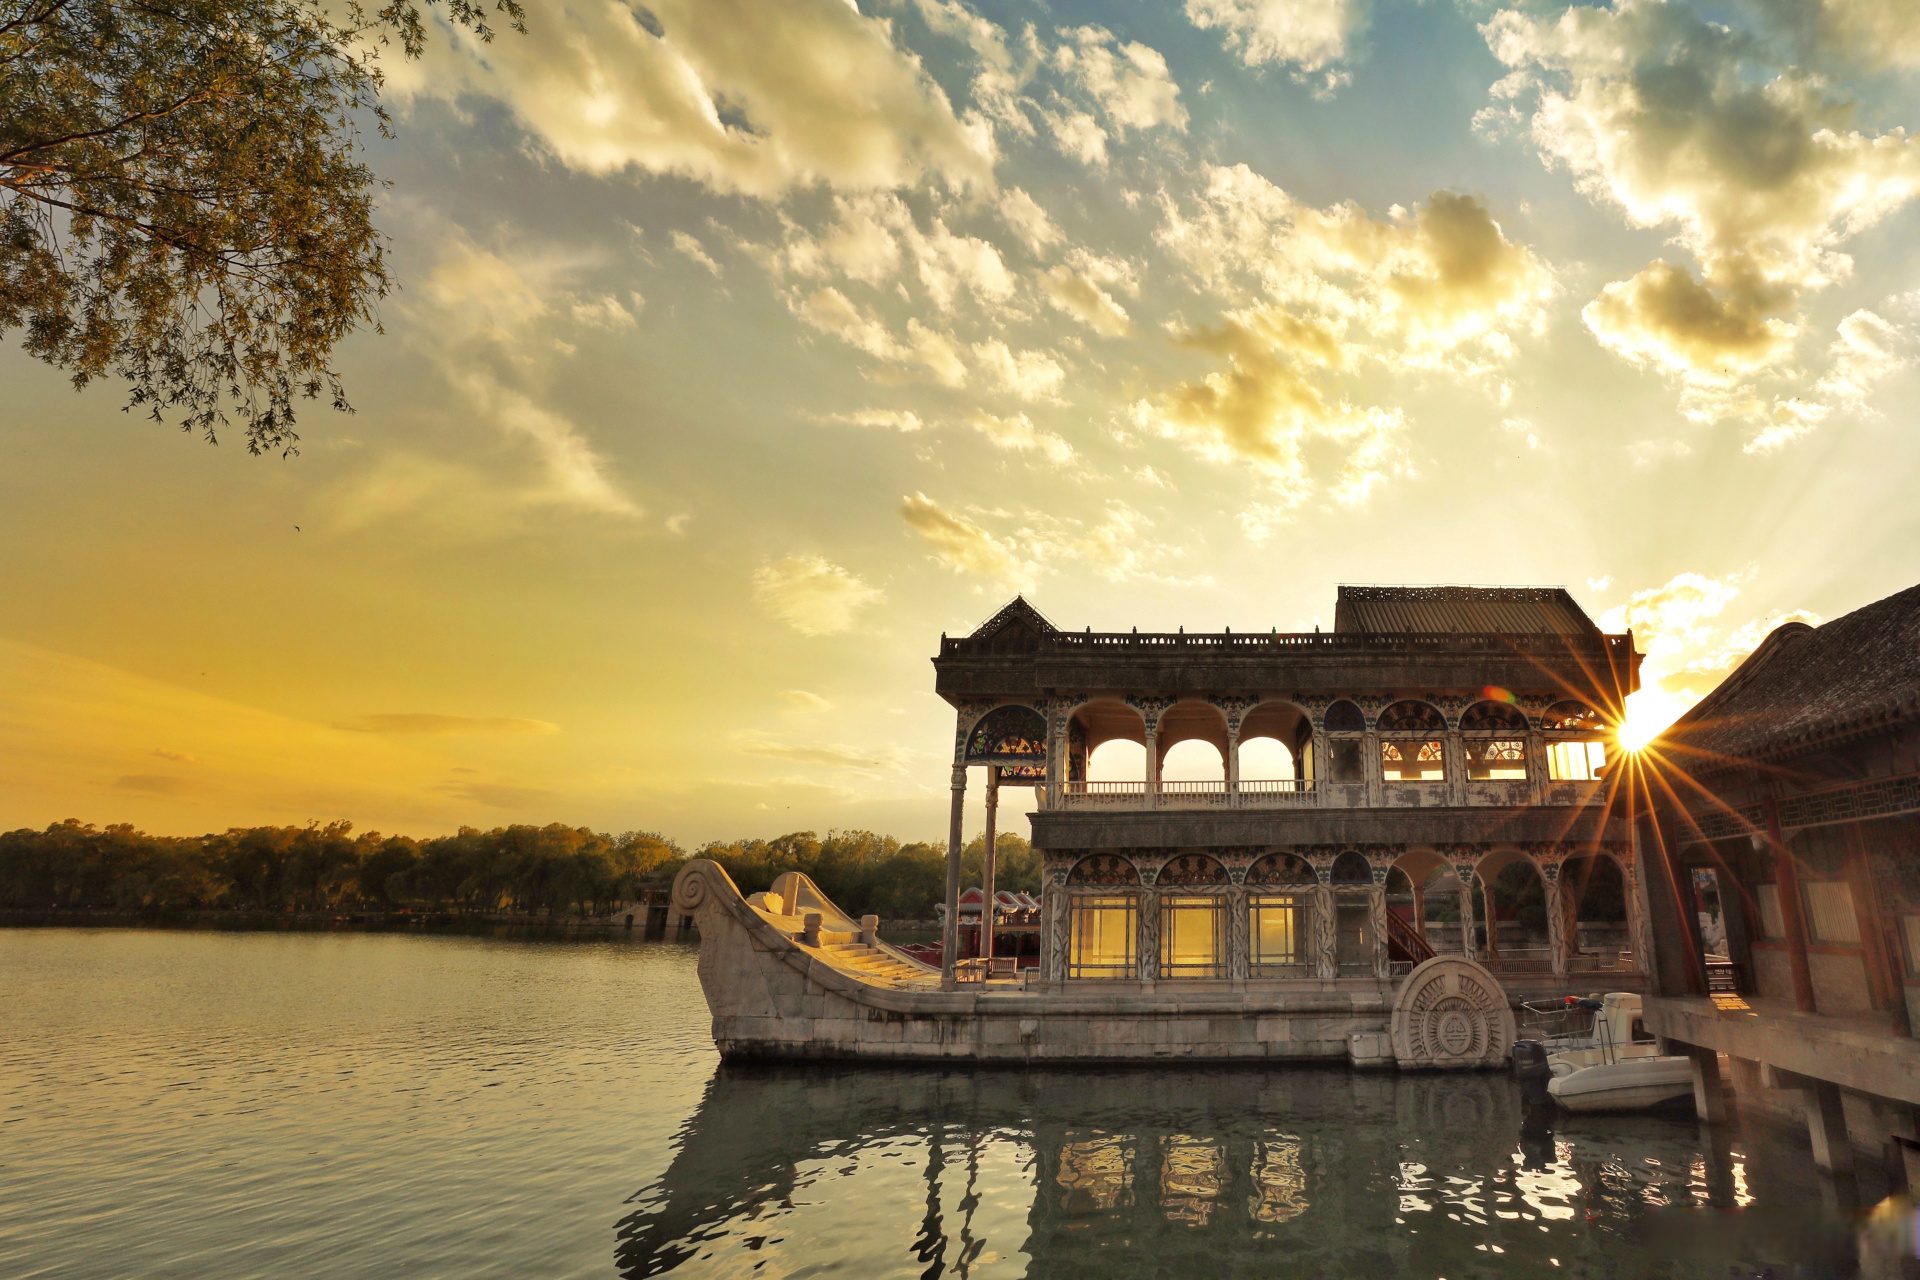 颐和园,以昆明湖,万寿山为基址,以杭州西湖为蓝本,汲取江南园林的设计